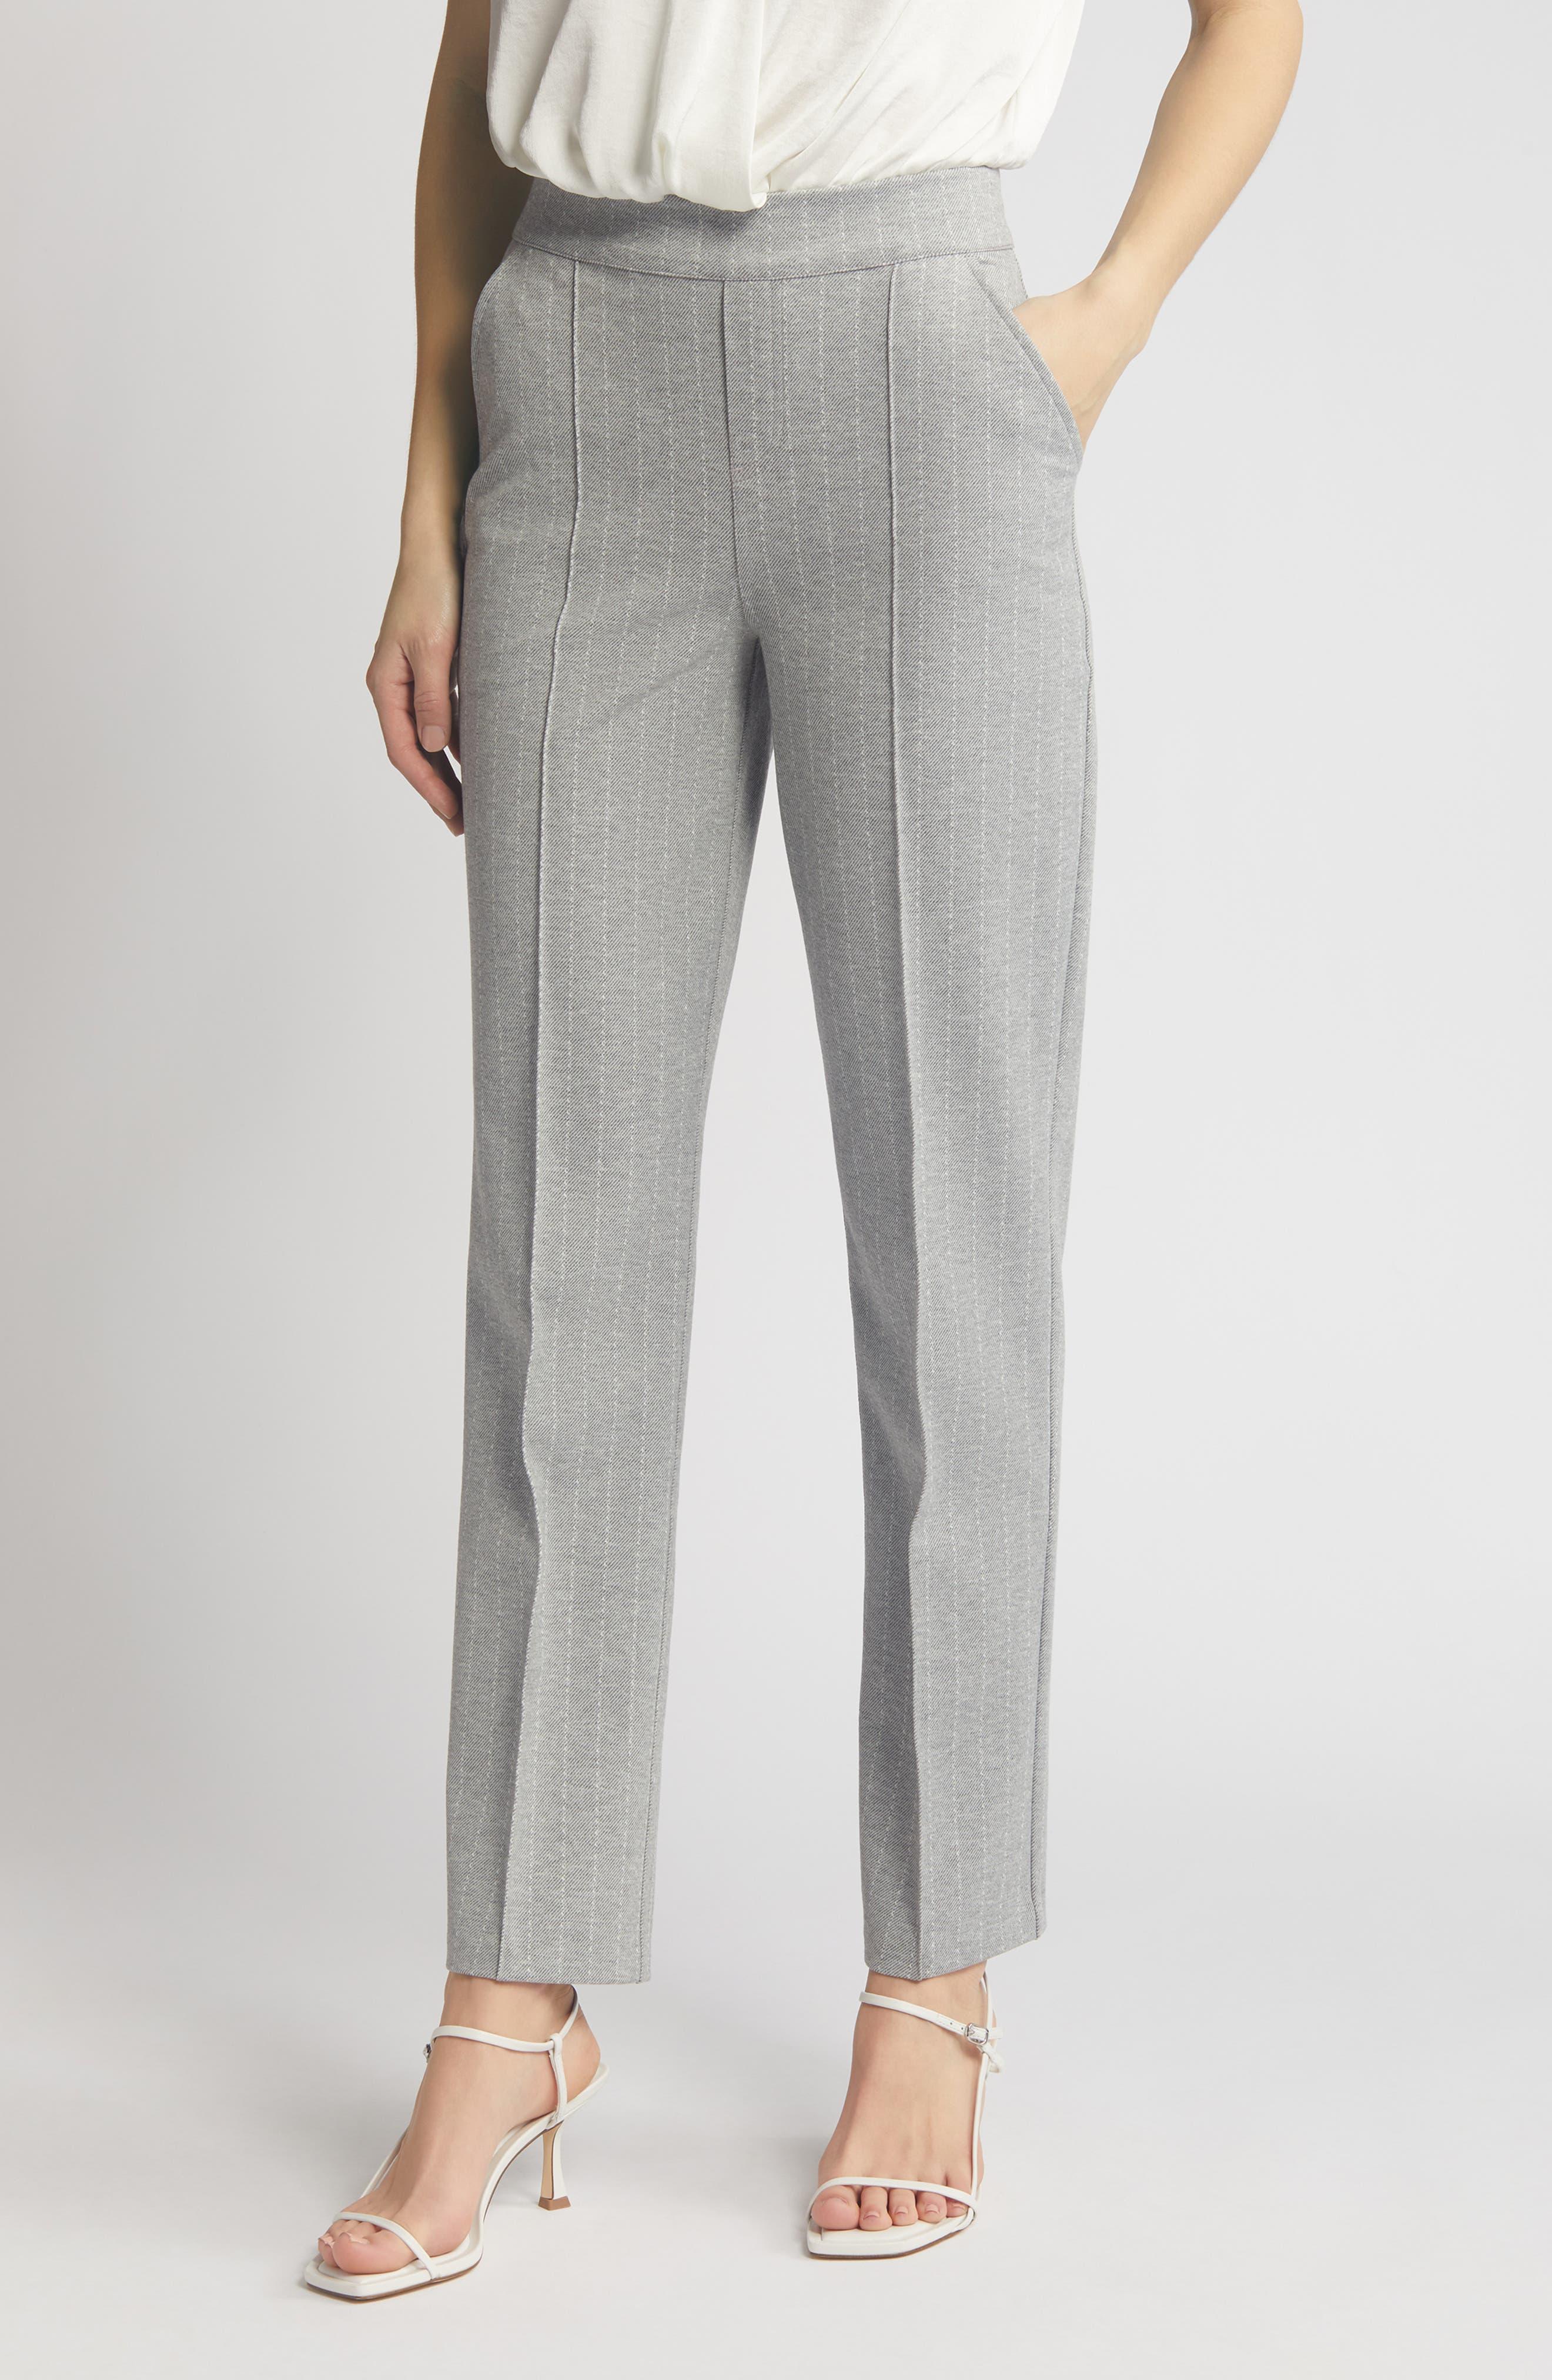 Hue Stripe Pull-on Ponte Knit leggings in Gray